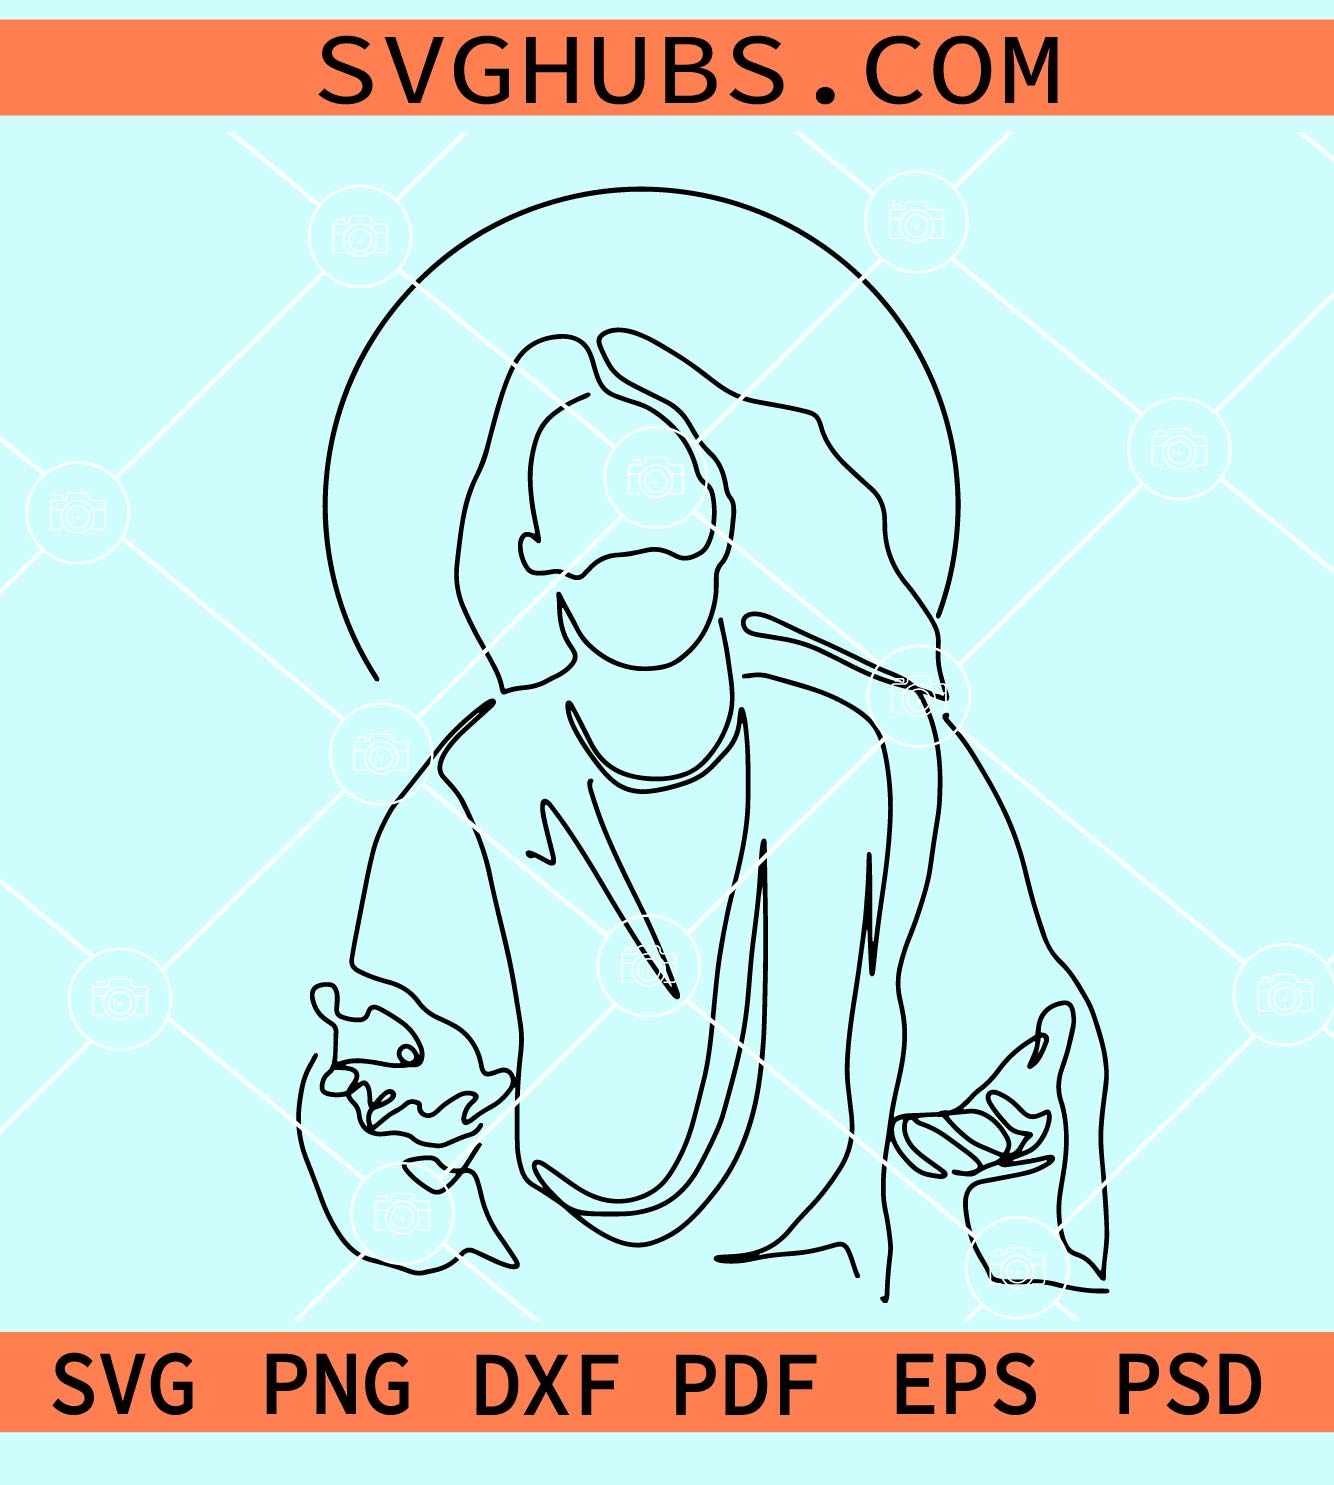 Jesus Christ line art SVG